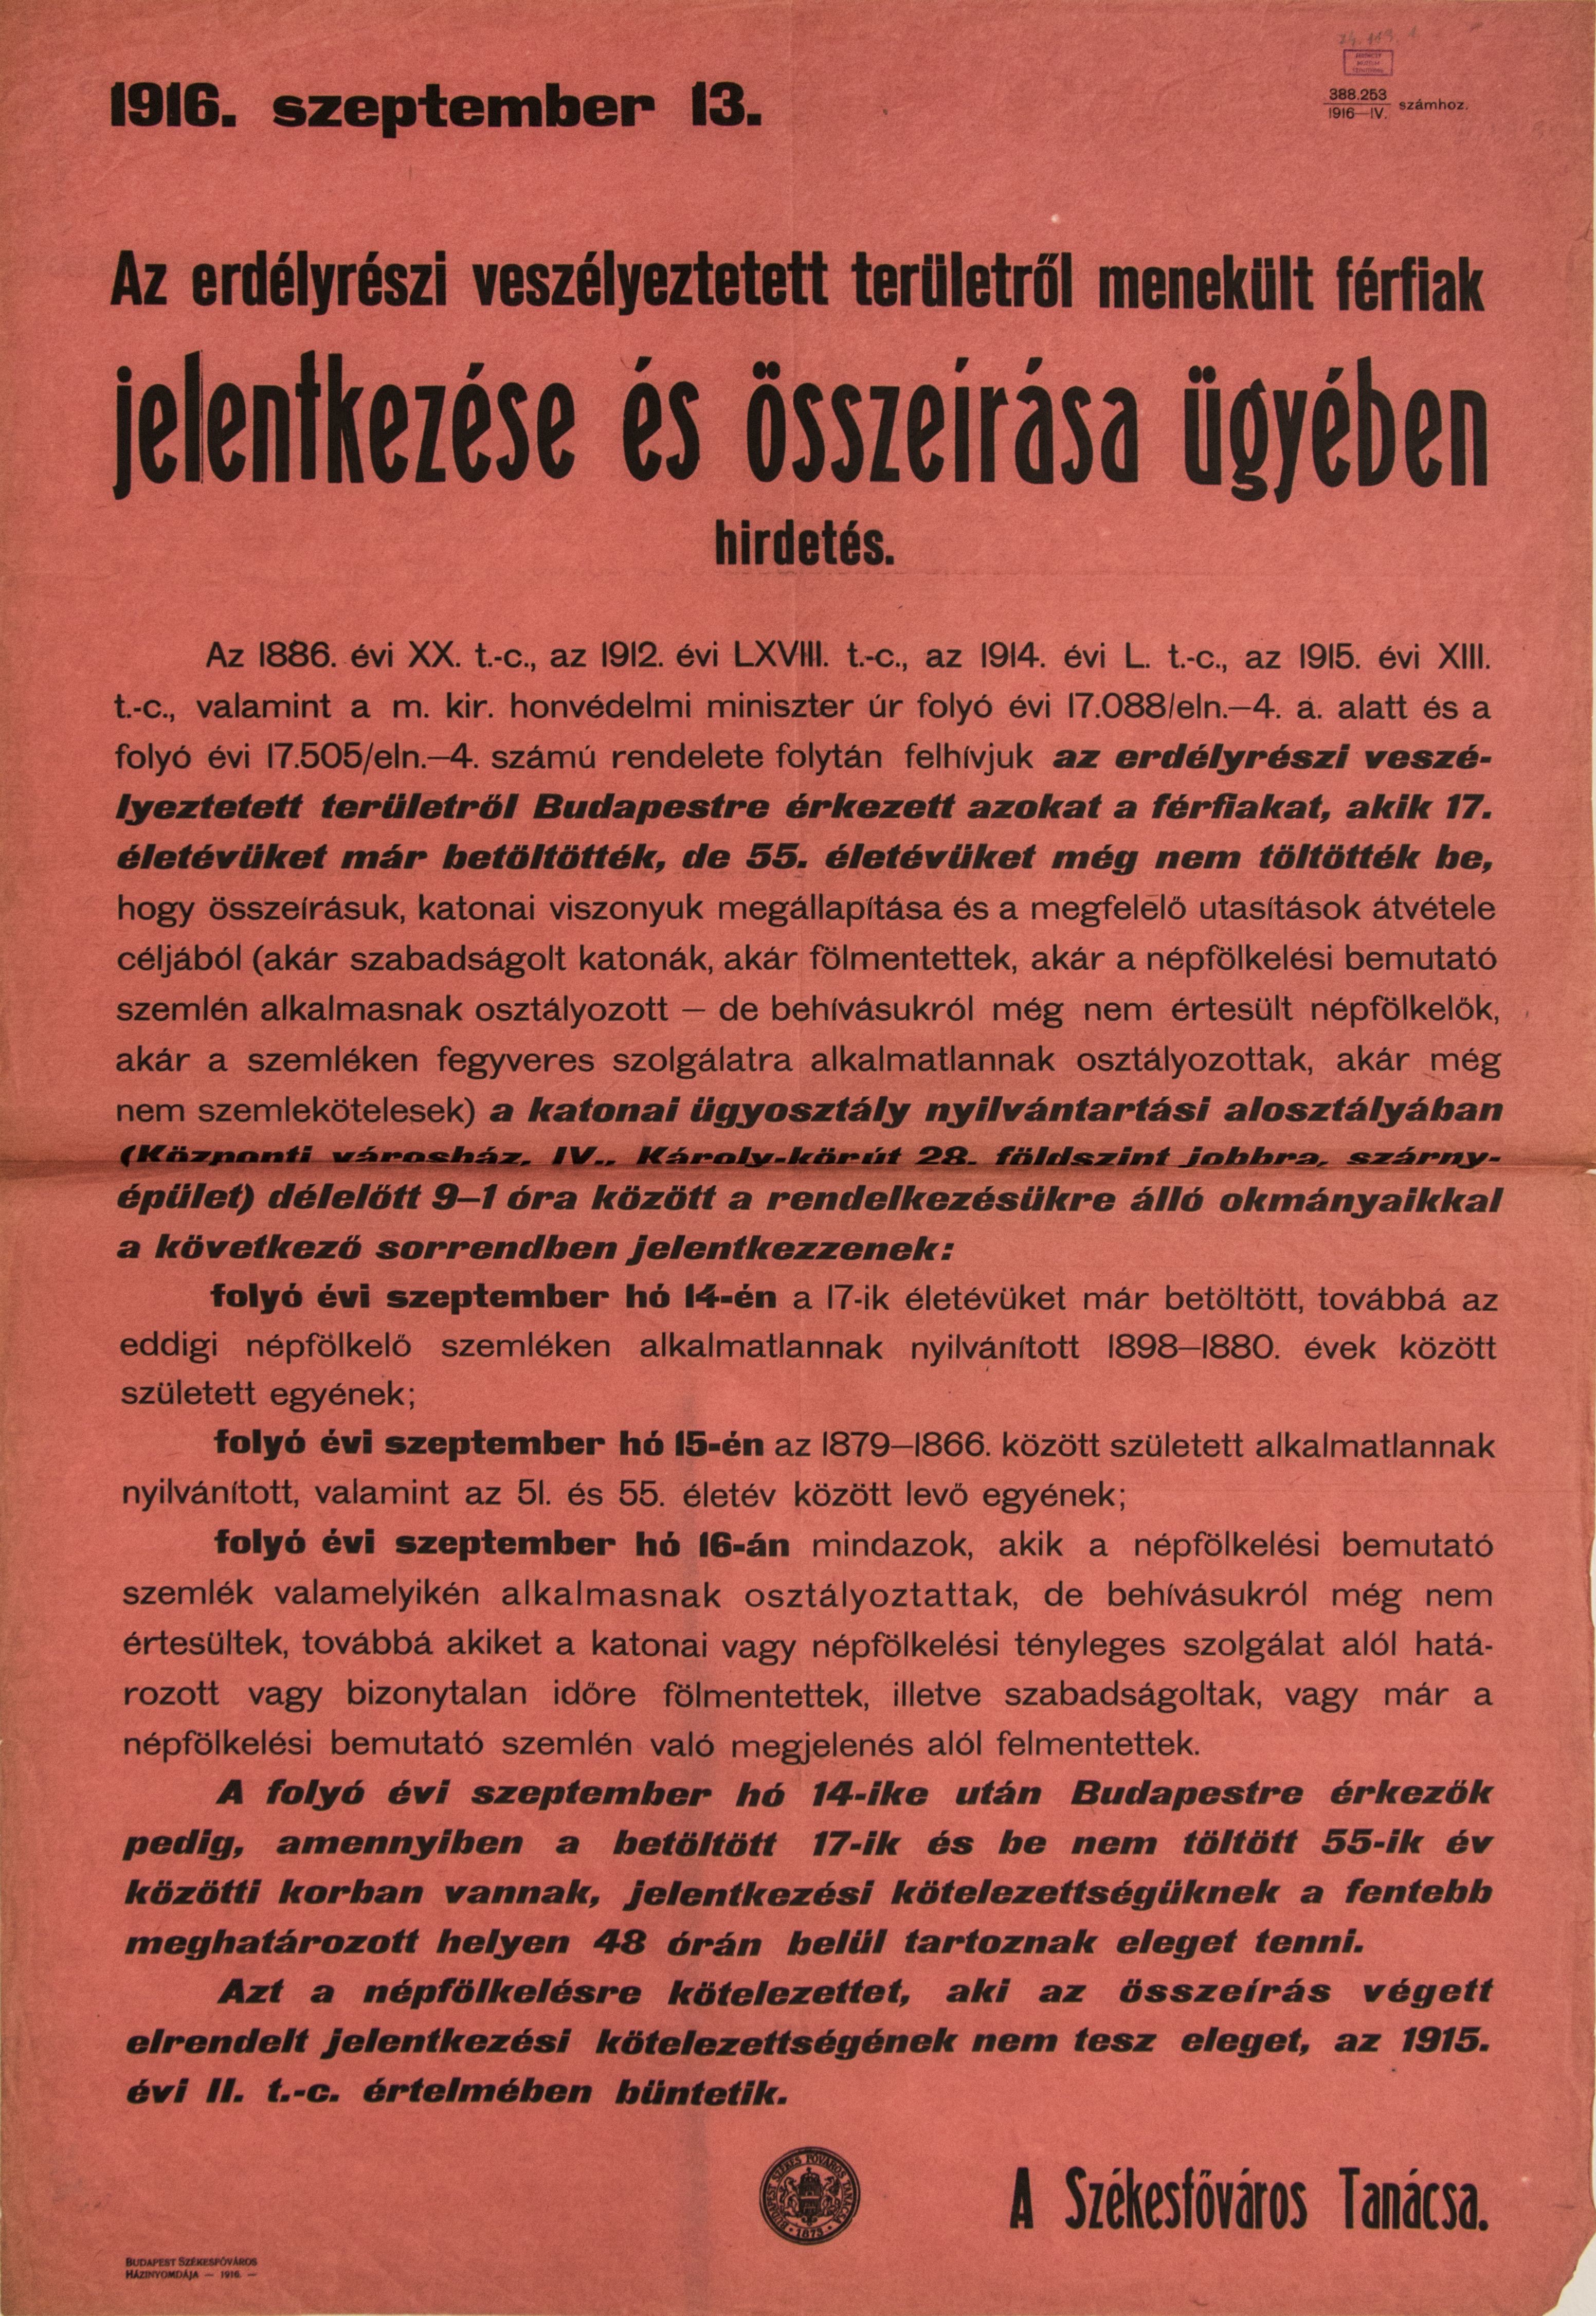 Az erdélyrészi menekült férfiak jelentkezése és összeírása, 1916.09.13. (rózsaszín alap, fekete betű) (Ferenczy Múzeumi Centrum CC BY-NC-SA)